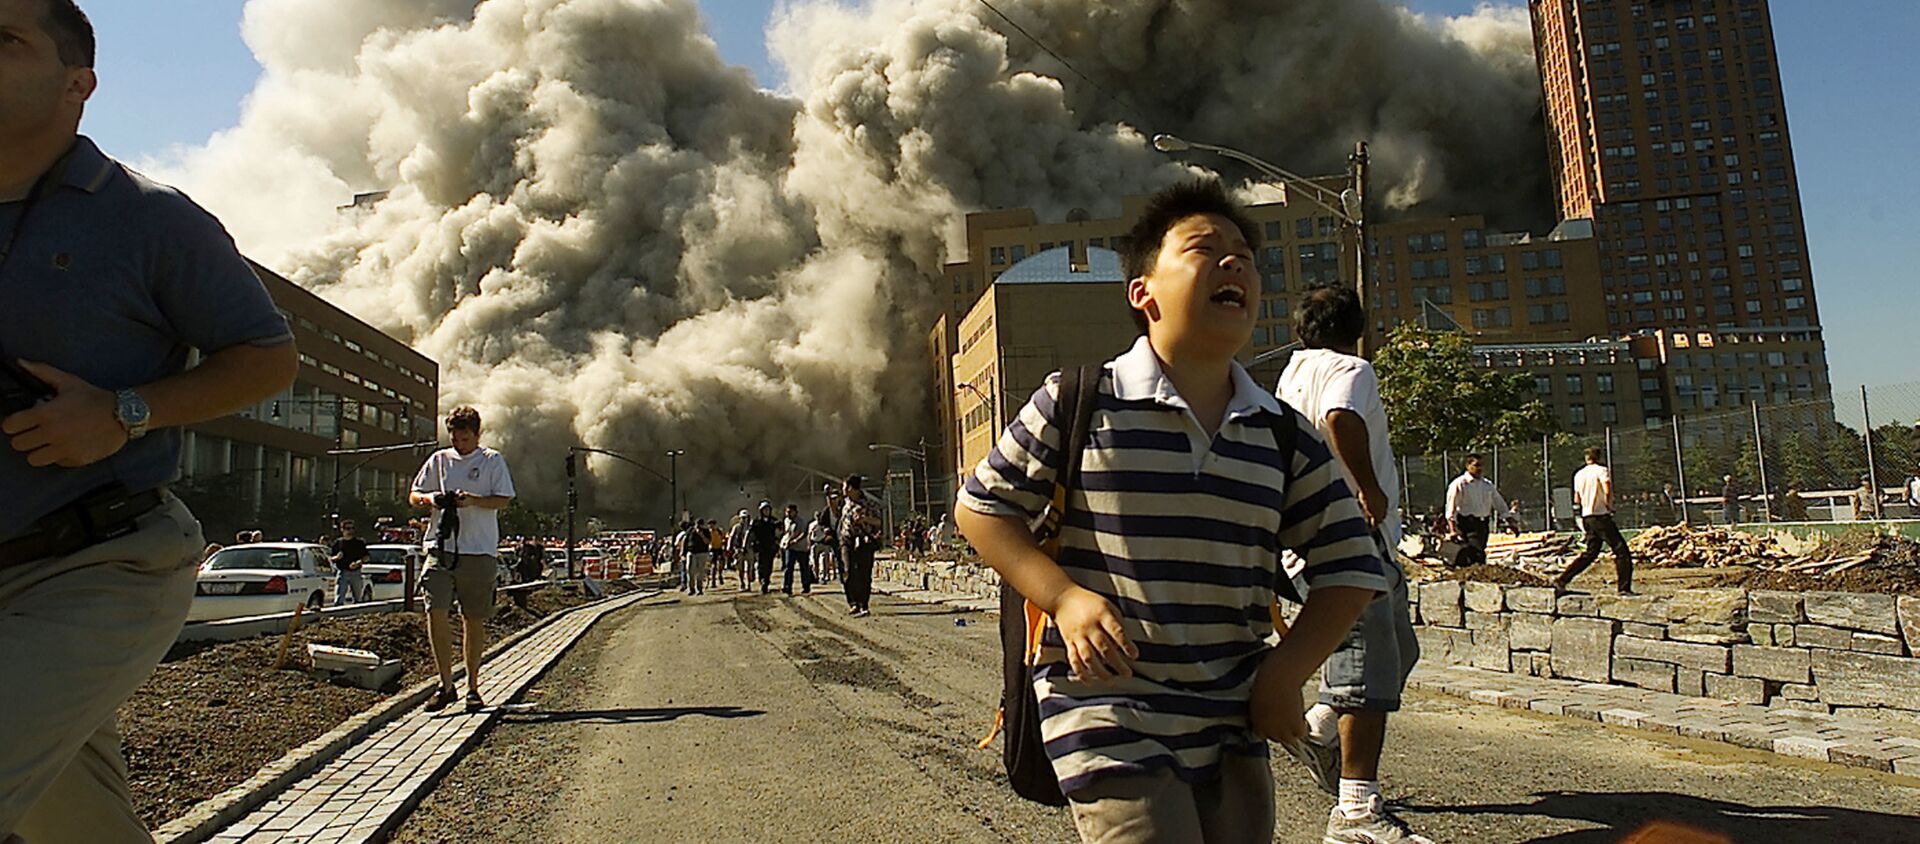 Ljudi beže iz Svetskog trgovinskog centra nakon što je napadnut 11. septembra 2001. godine. - Sputnik Srbija, 1920, 12.09.2019